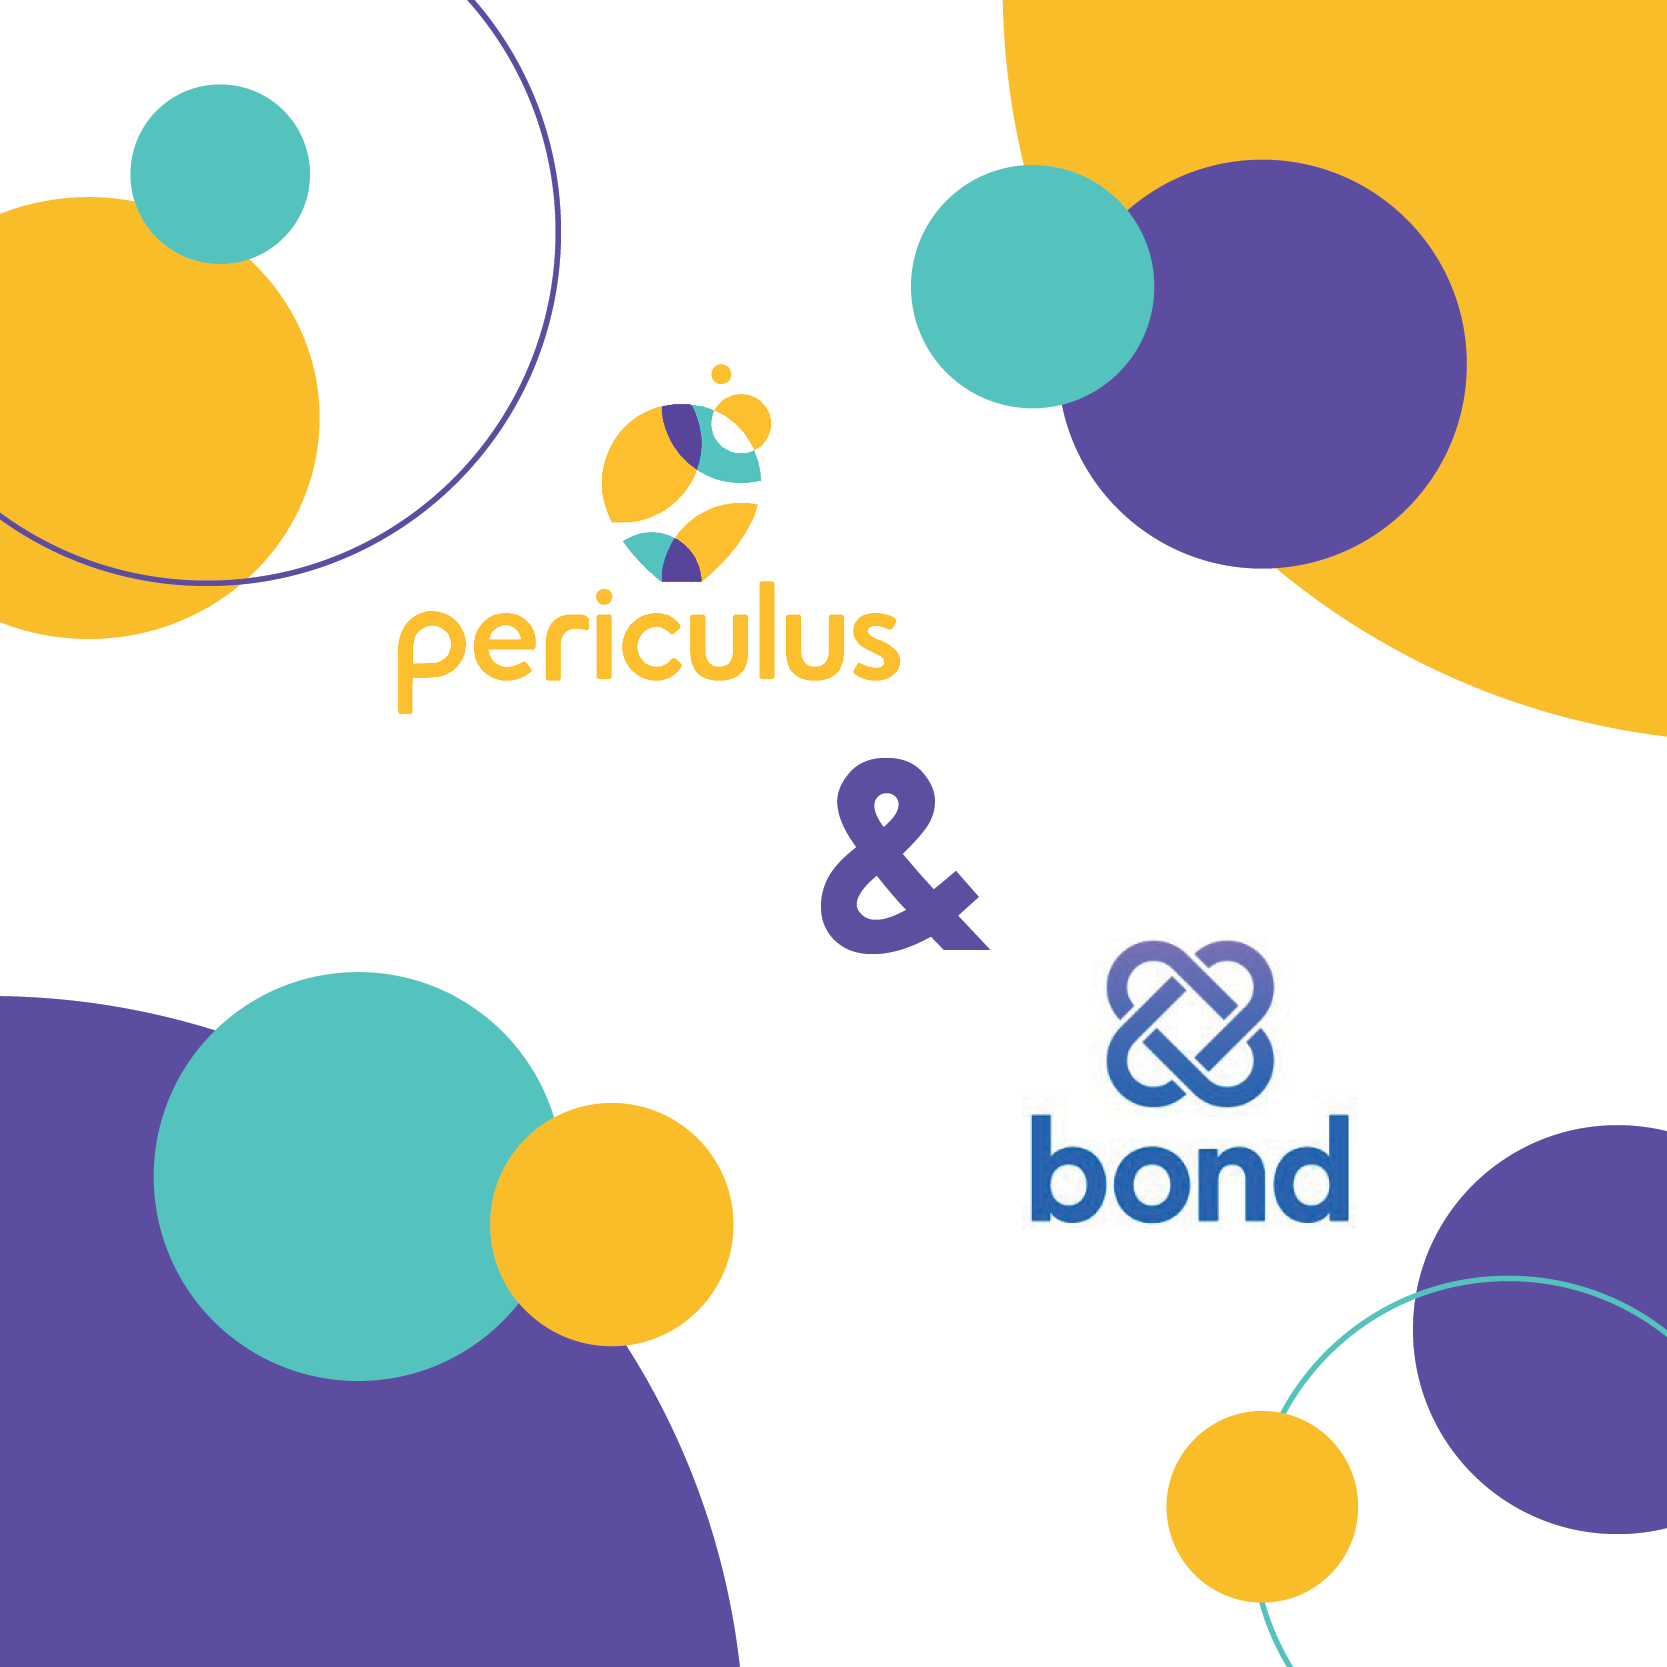 Periculus_Bond_PR Graphic_2